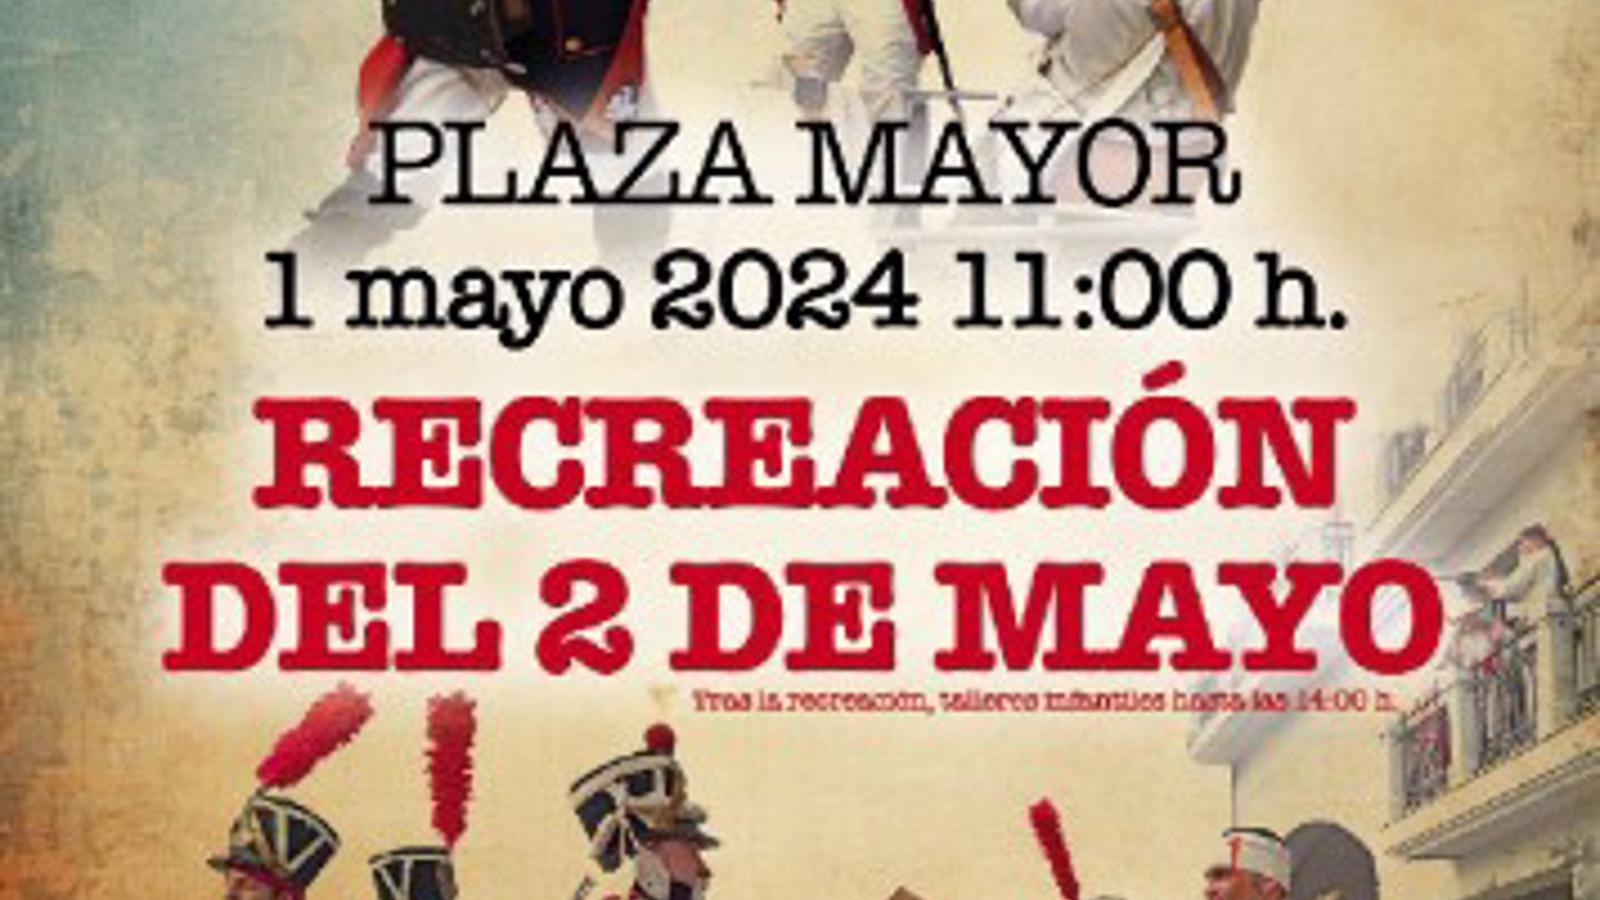 Torrejón.- La Plaza Mayor acoge este miércoles una recreación histórica de la Guerra de la Independencia